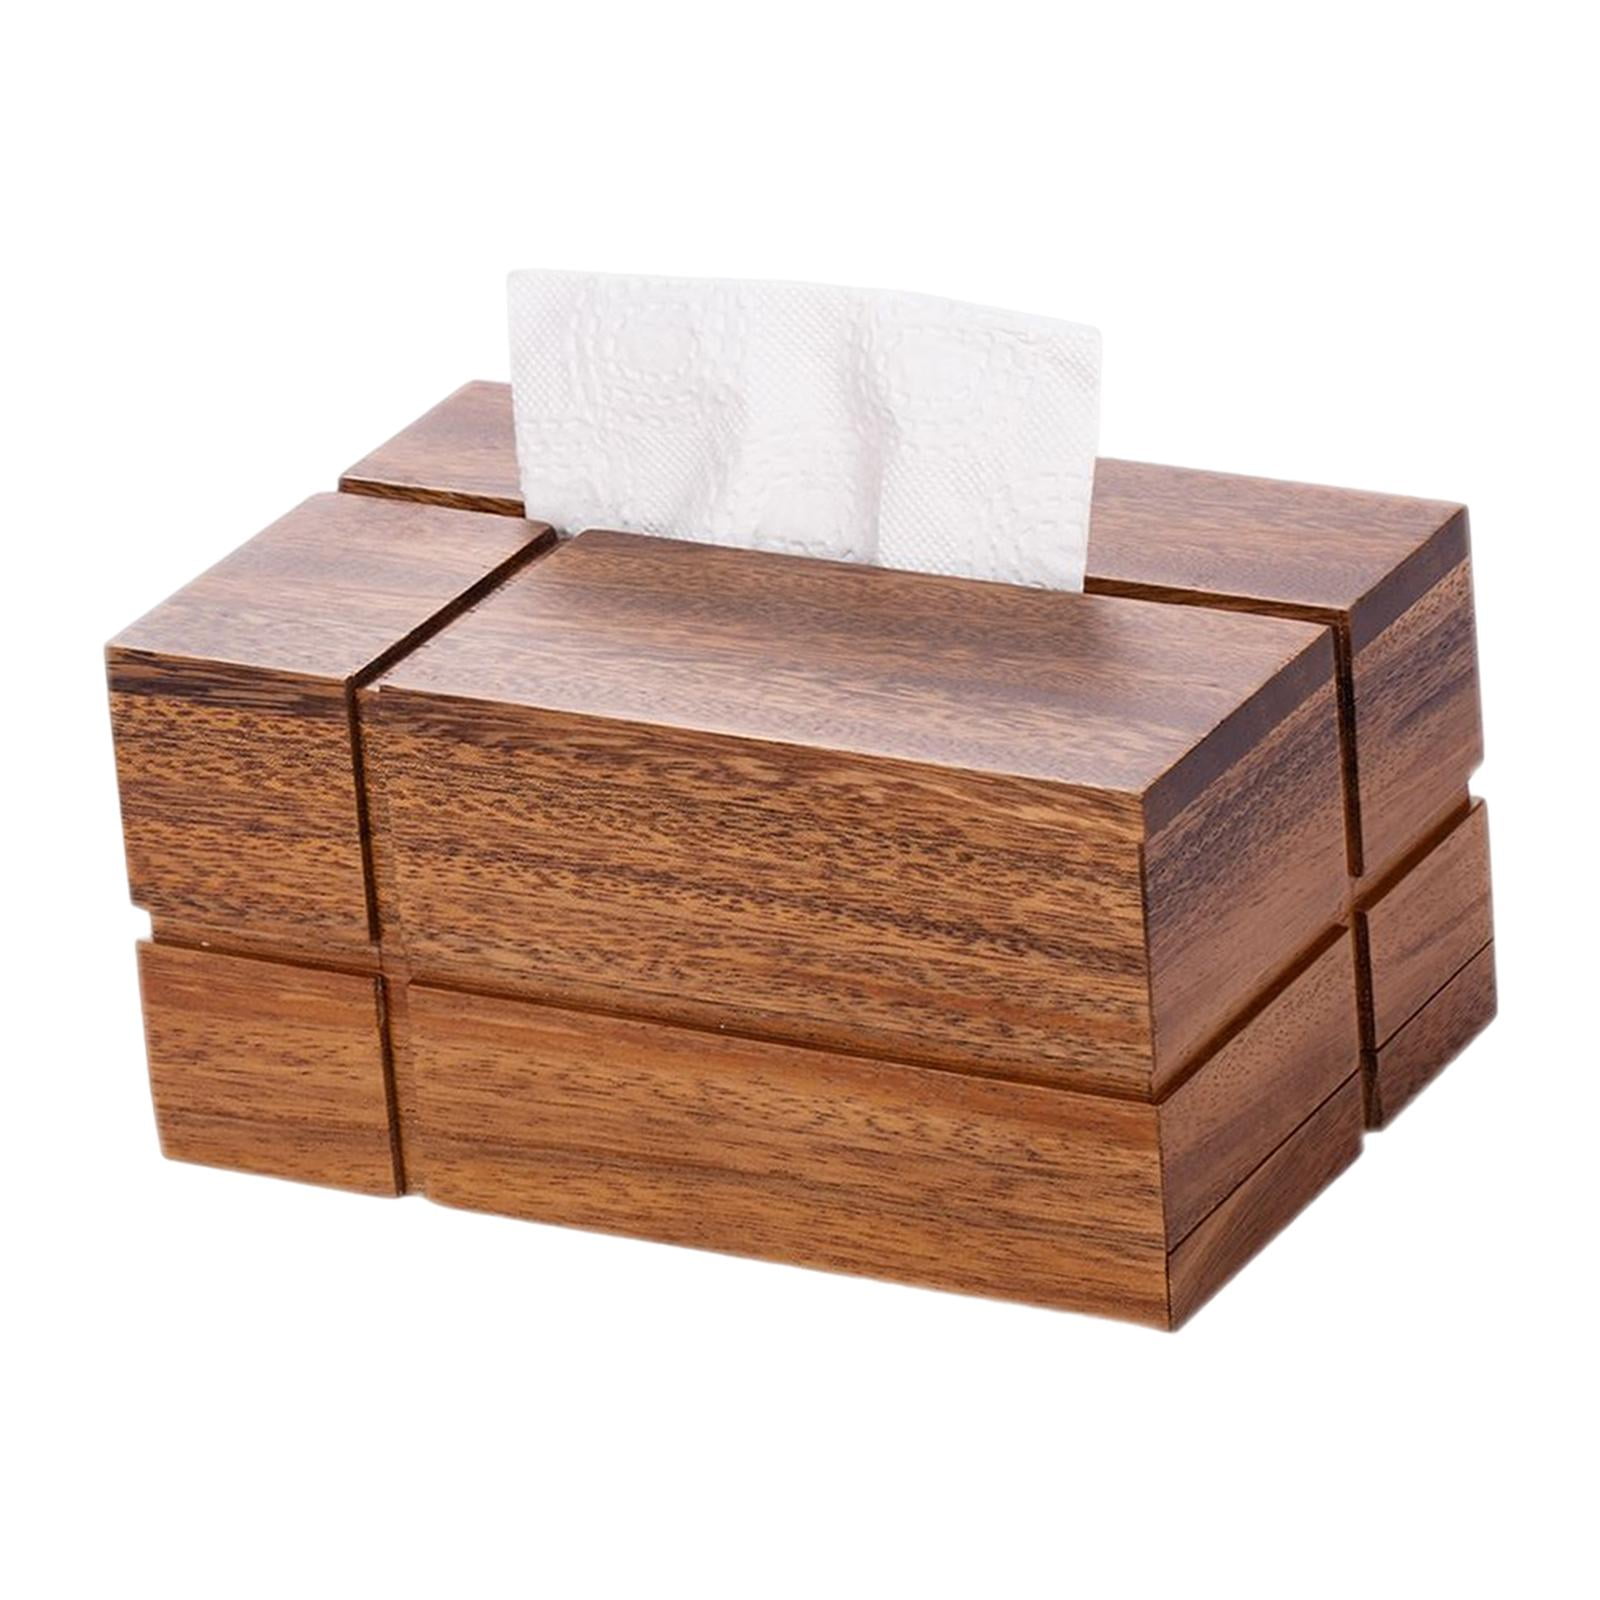 Wooden Desktop Tissue Paper Holder Tissue Storage Box Tissue Paper Organizer  with Toothpick Holder Napkin Holder - AliExpress